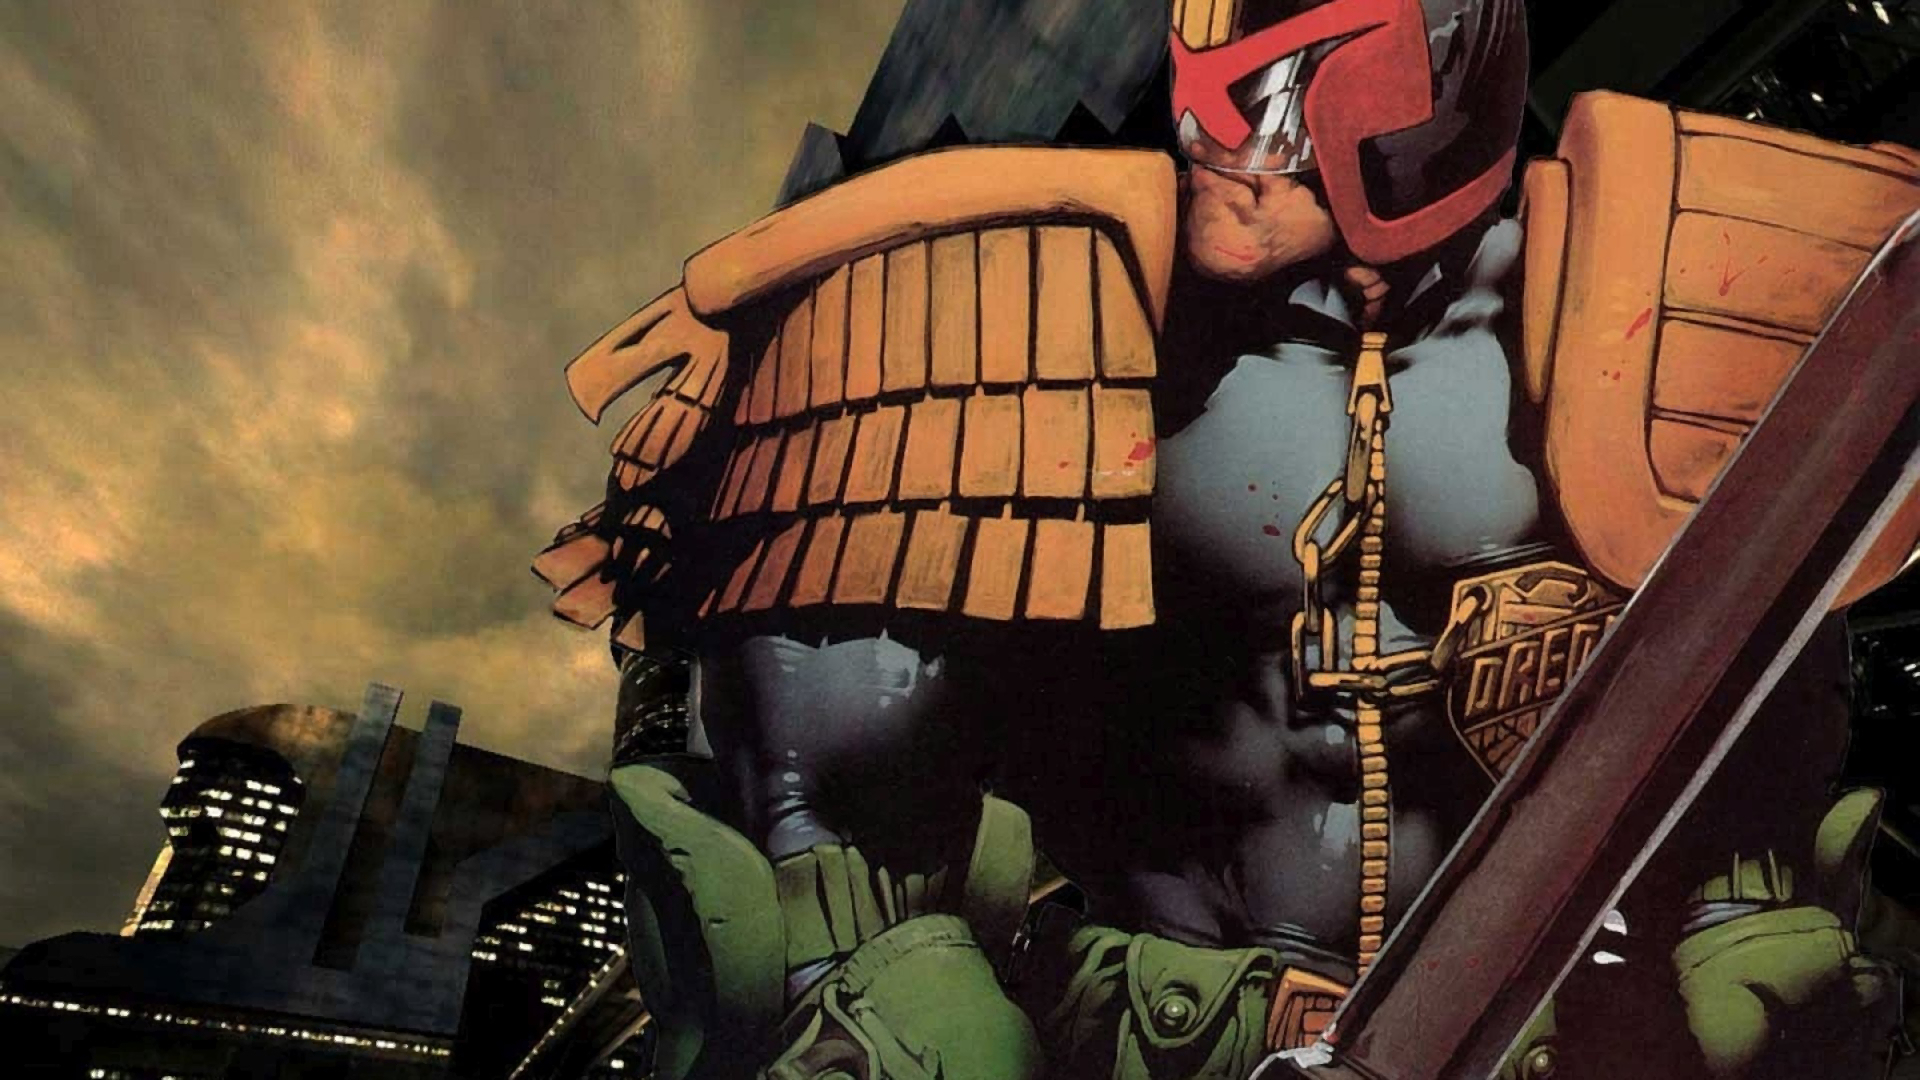 Download mobile wallpaper Comics, Superhero, Judge Dredd for free.